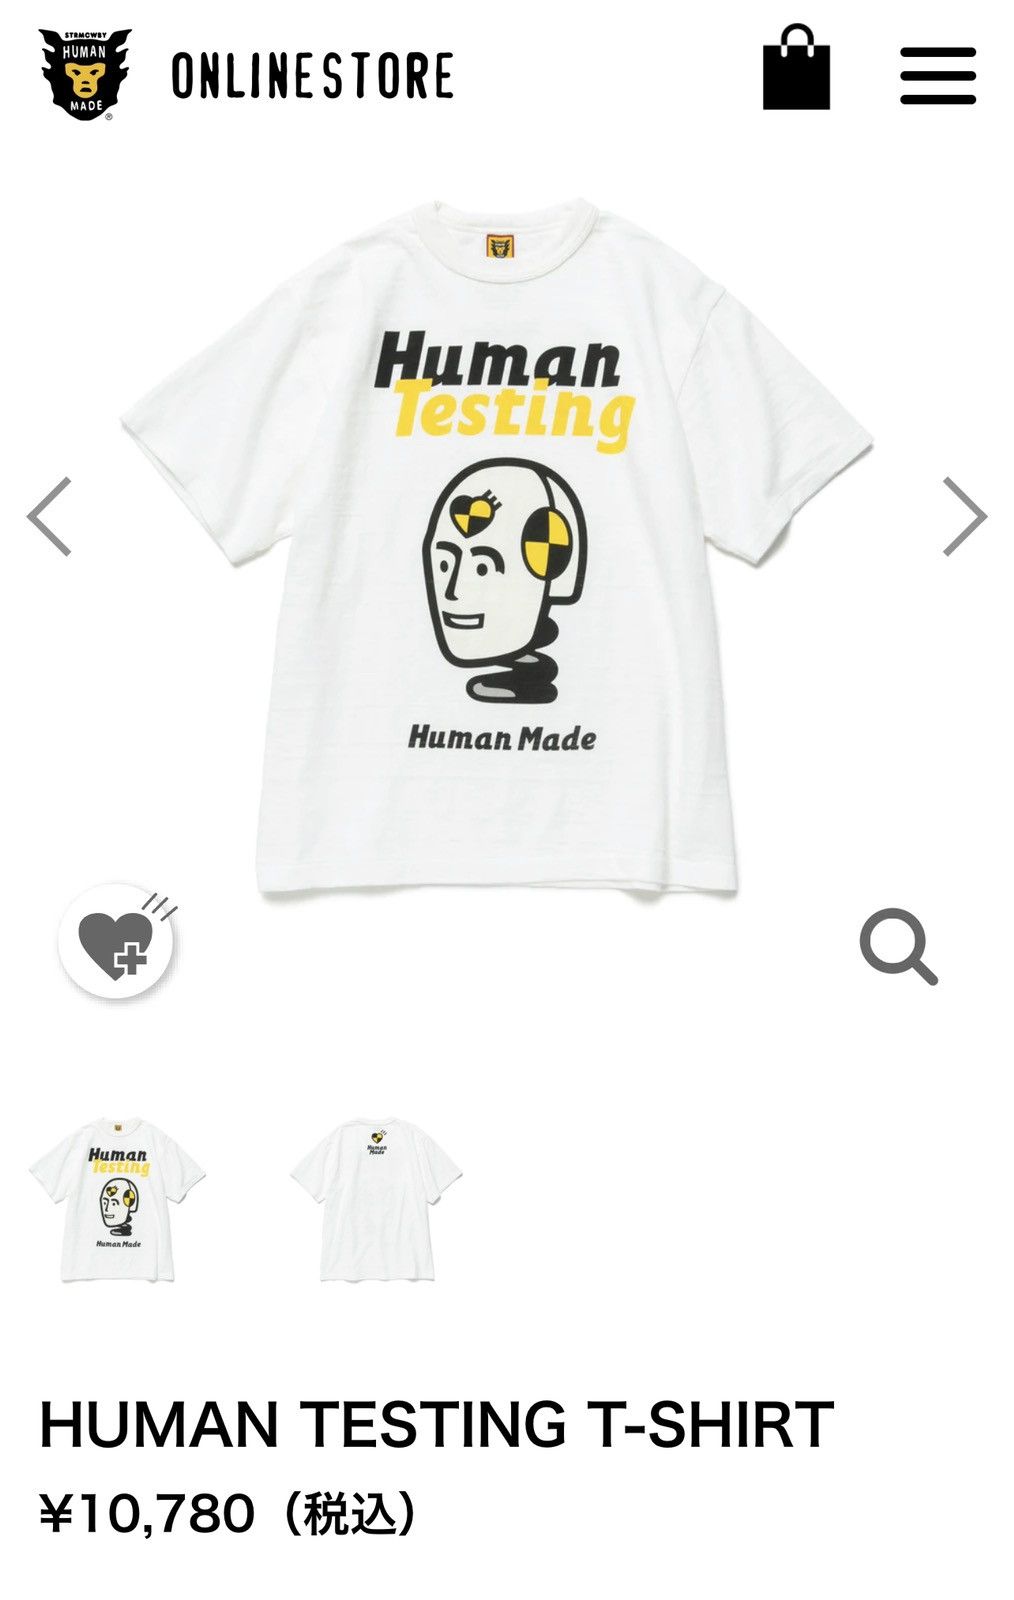 Human Made Human Made x AWGE Human Testing Shirt | Grailed